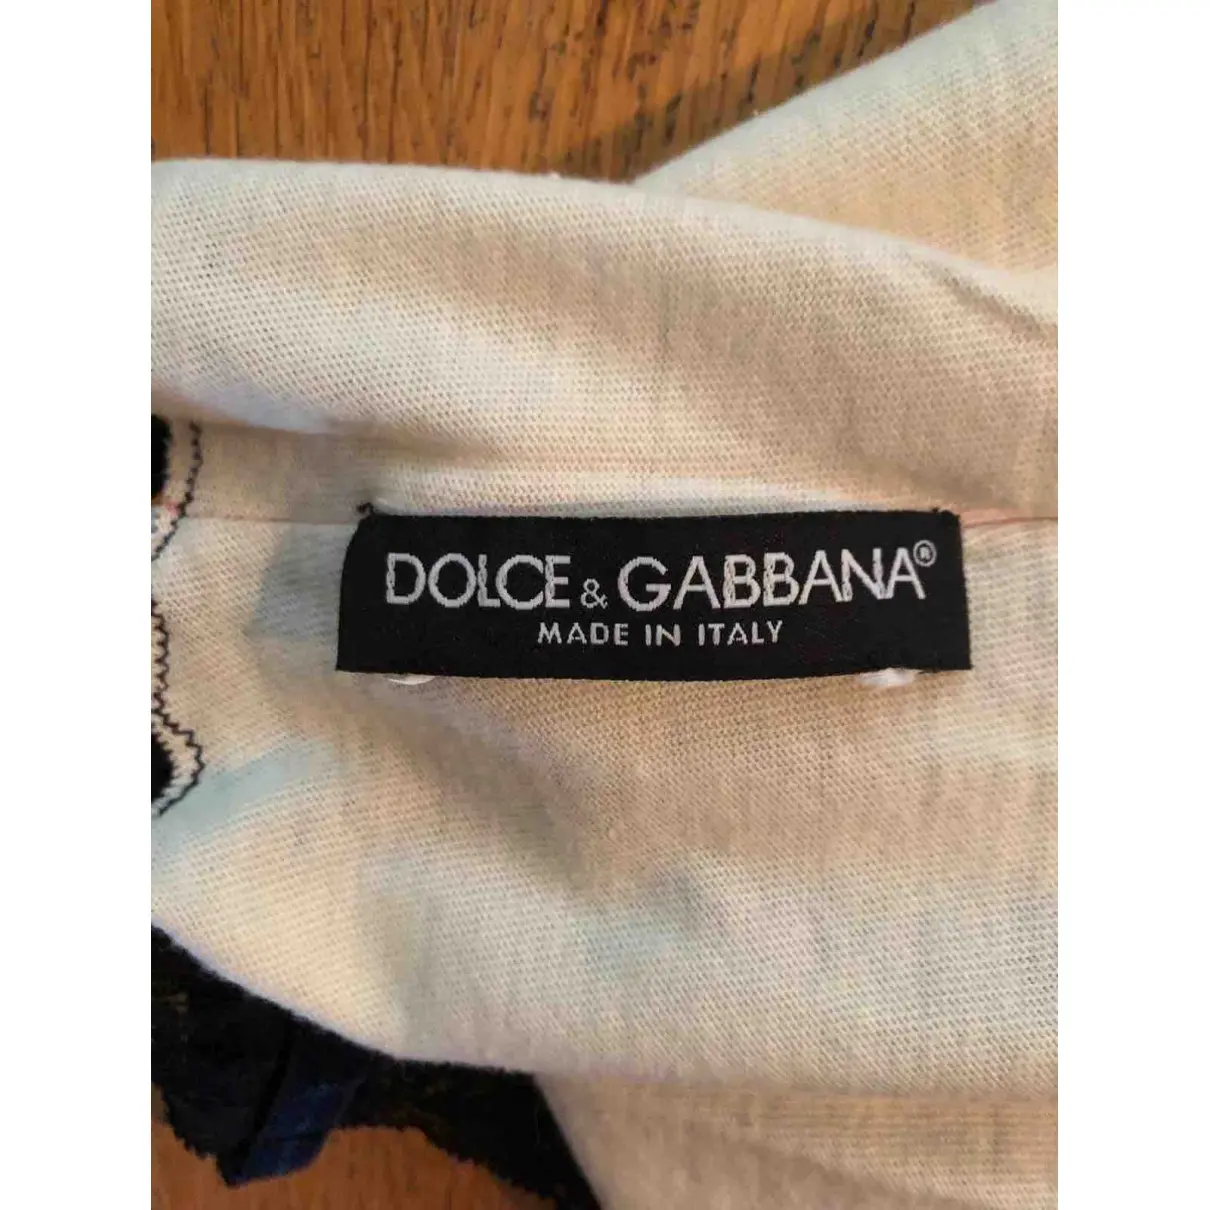 Buy Dolce & Gabbana Camisole online